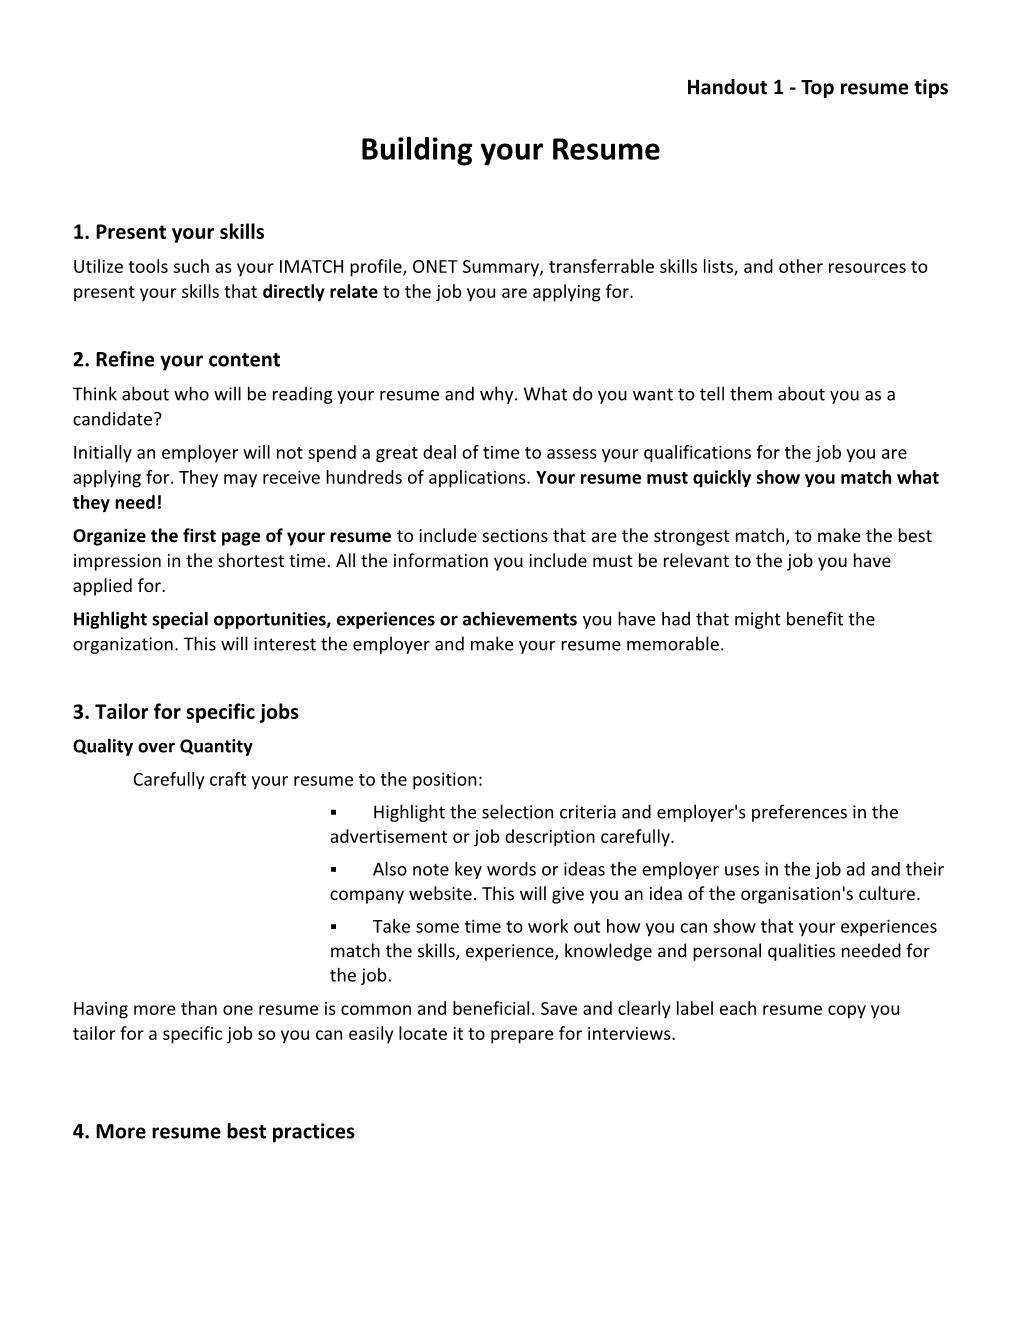 Handout 1 - Top Resume Tips